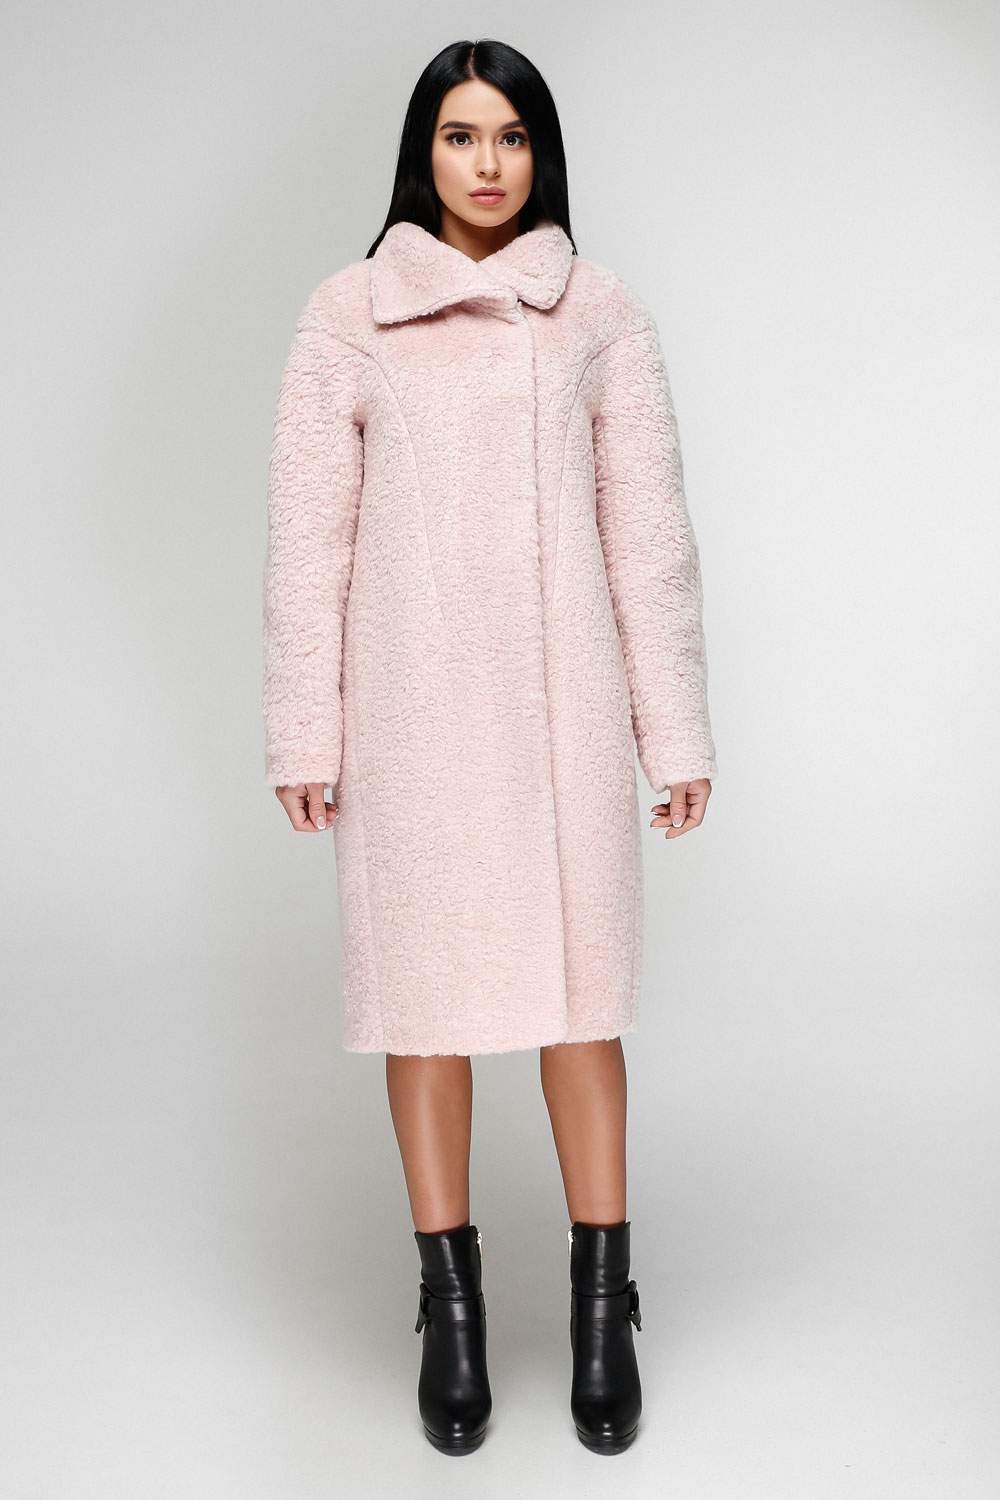 Молодежное зимнее пальто для пышных женщин - Блог-Фаворитти